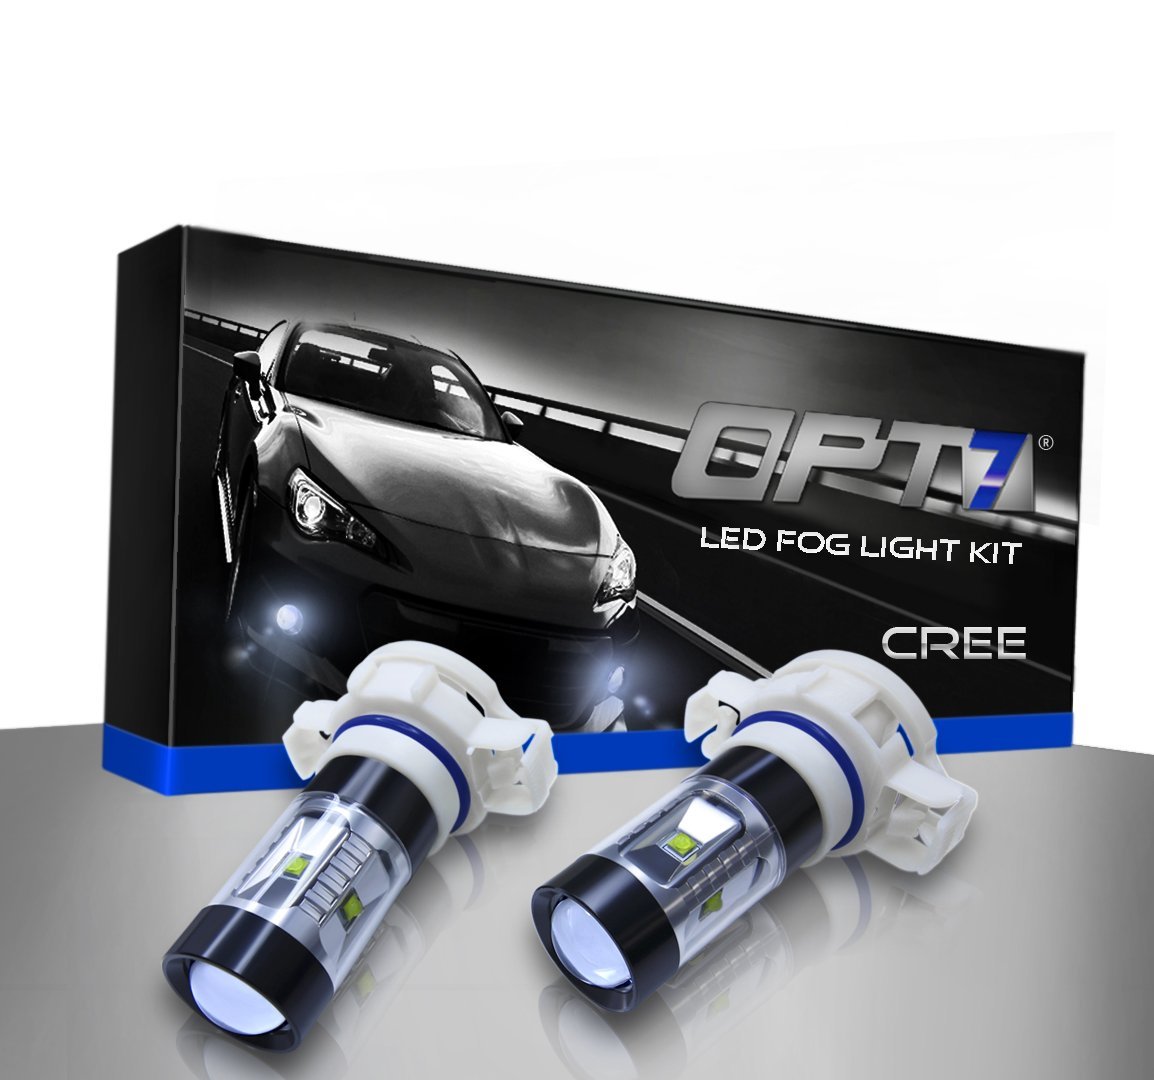 OPT7 LED Fog Light Kit